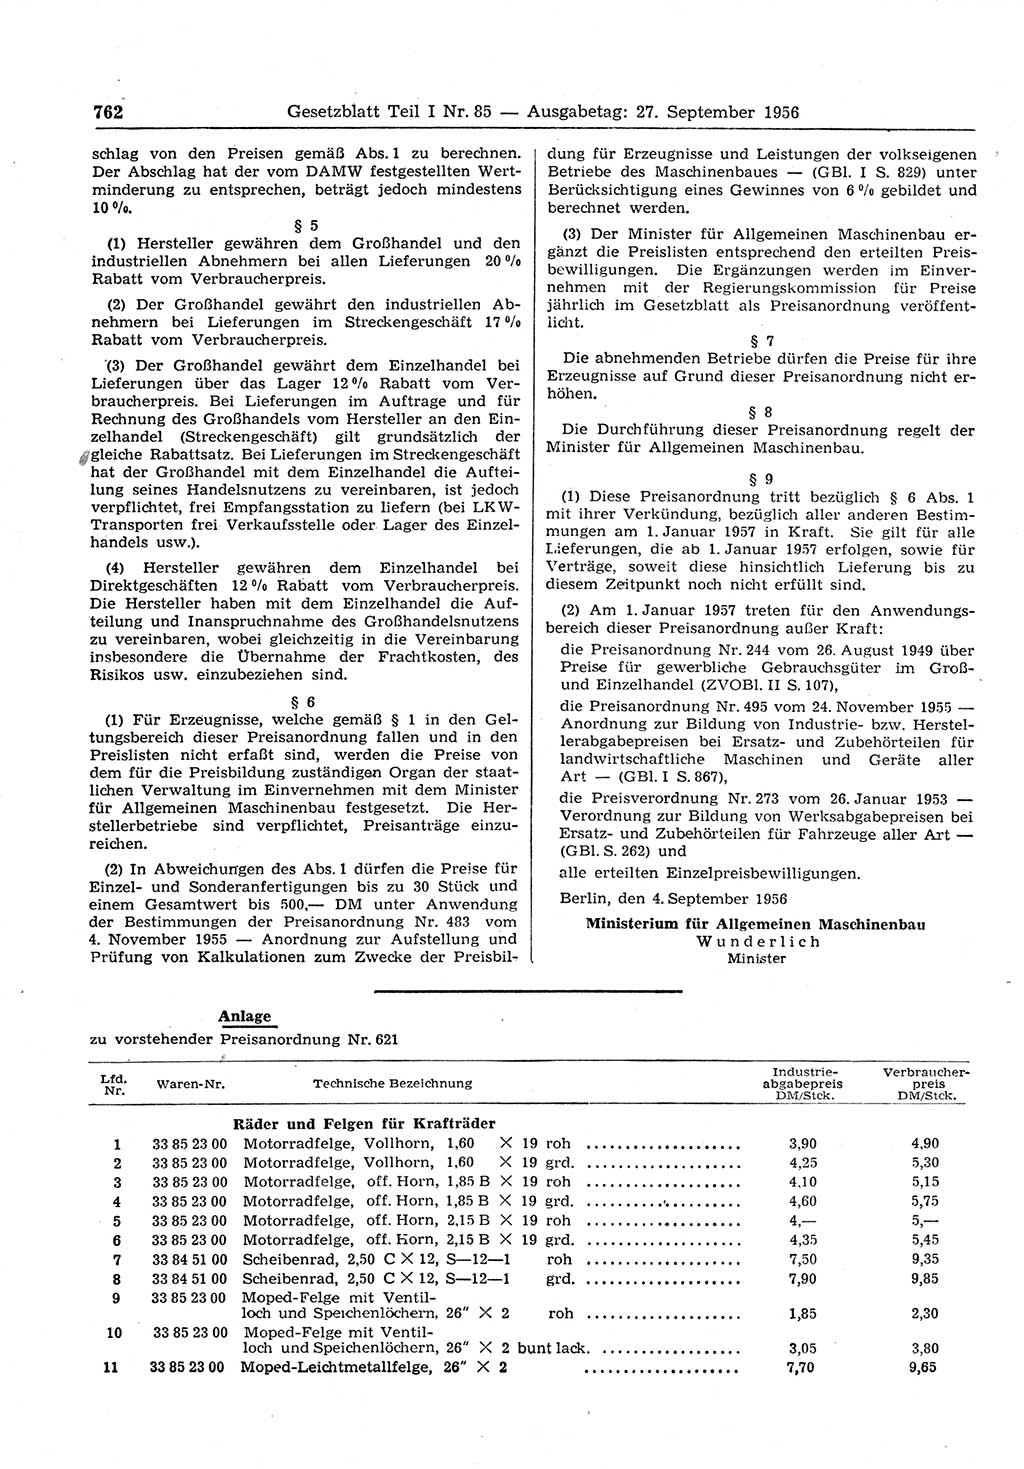 Gesetzblatt (GBl.) der Deutschen Demokratischen Republik (DDR) Teil Ⅰ 1956, Seite 762 (GBl. DDR Ⅰ 1956, S. 762)